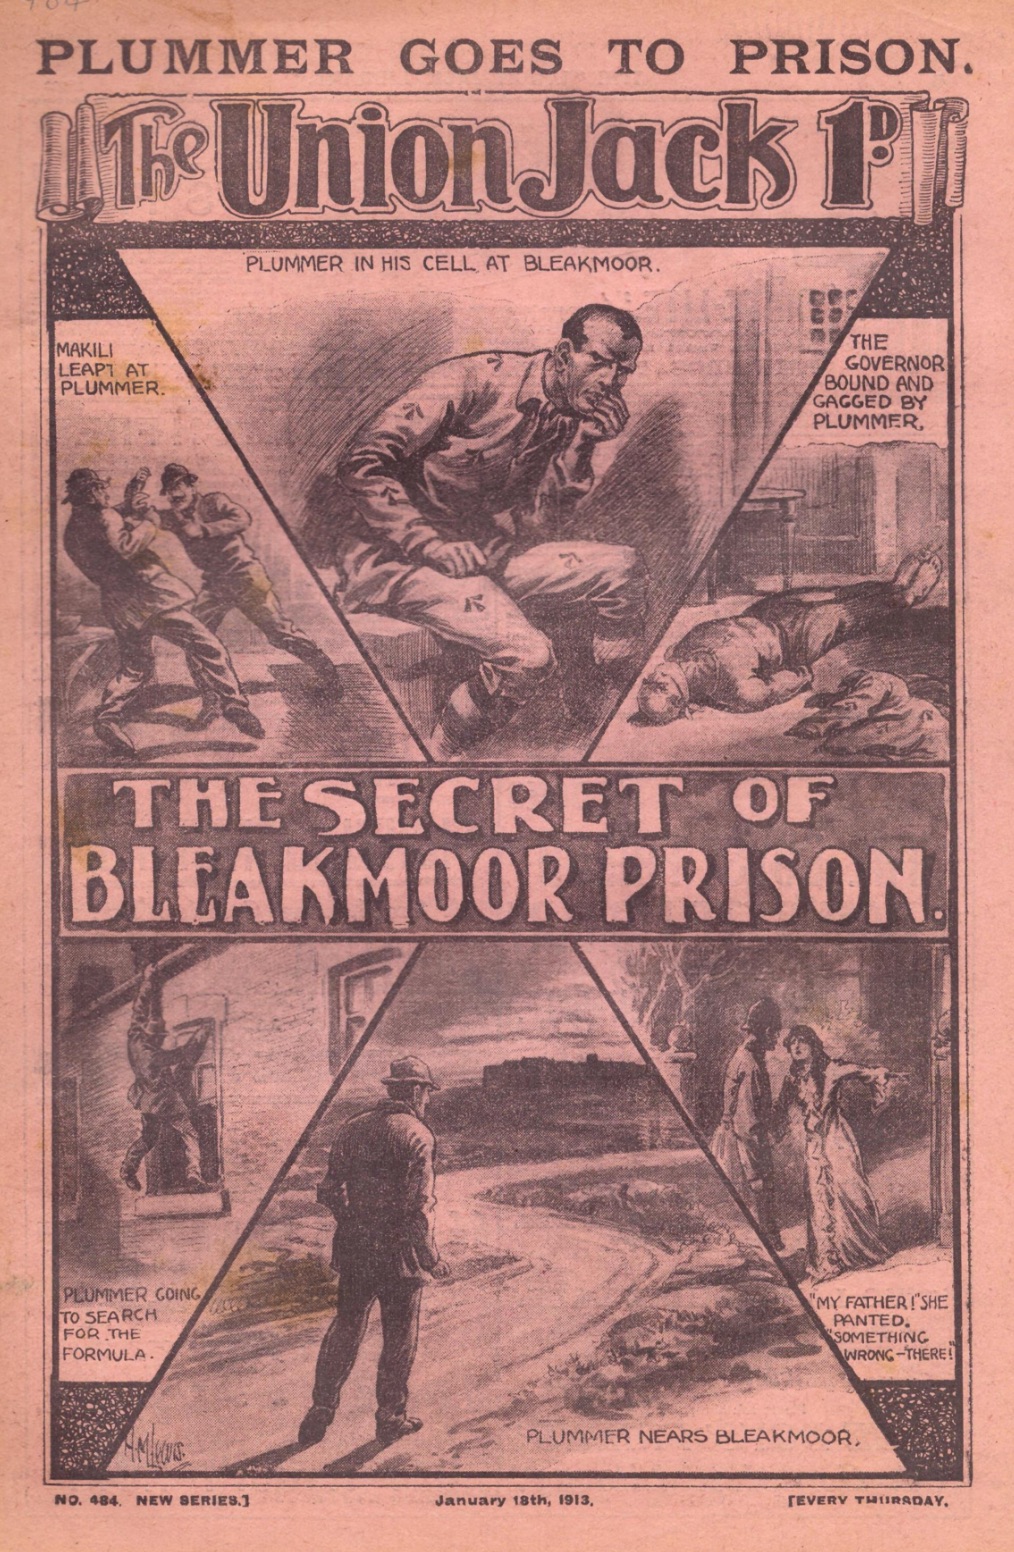 THE SECRET OF BLEAKMOOR PRISON